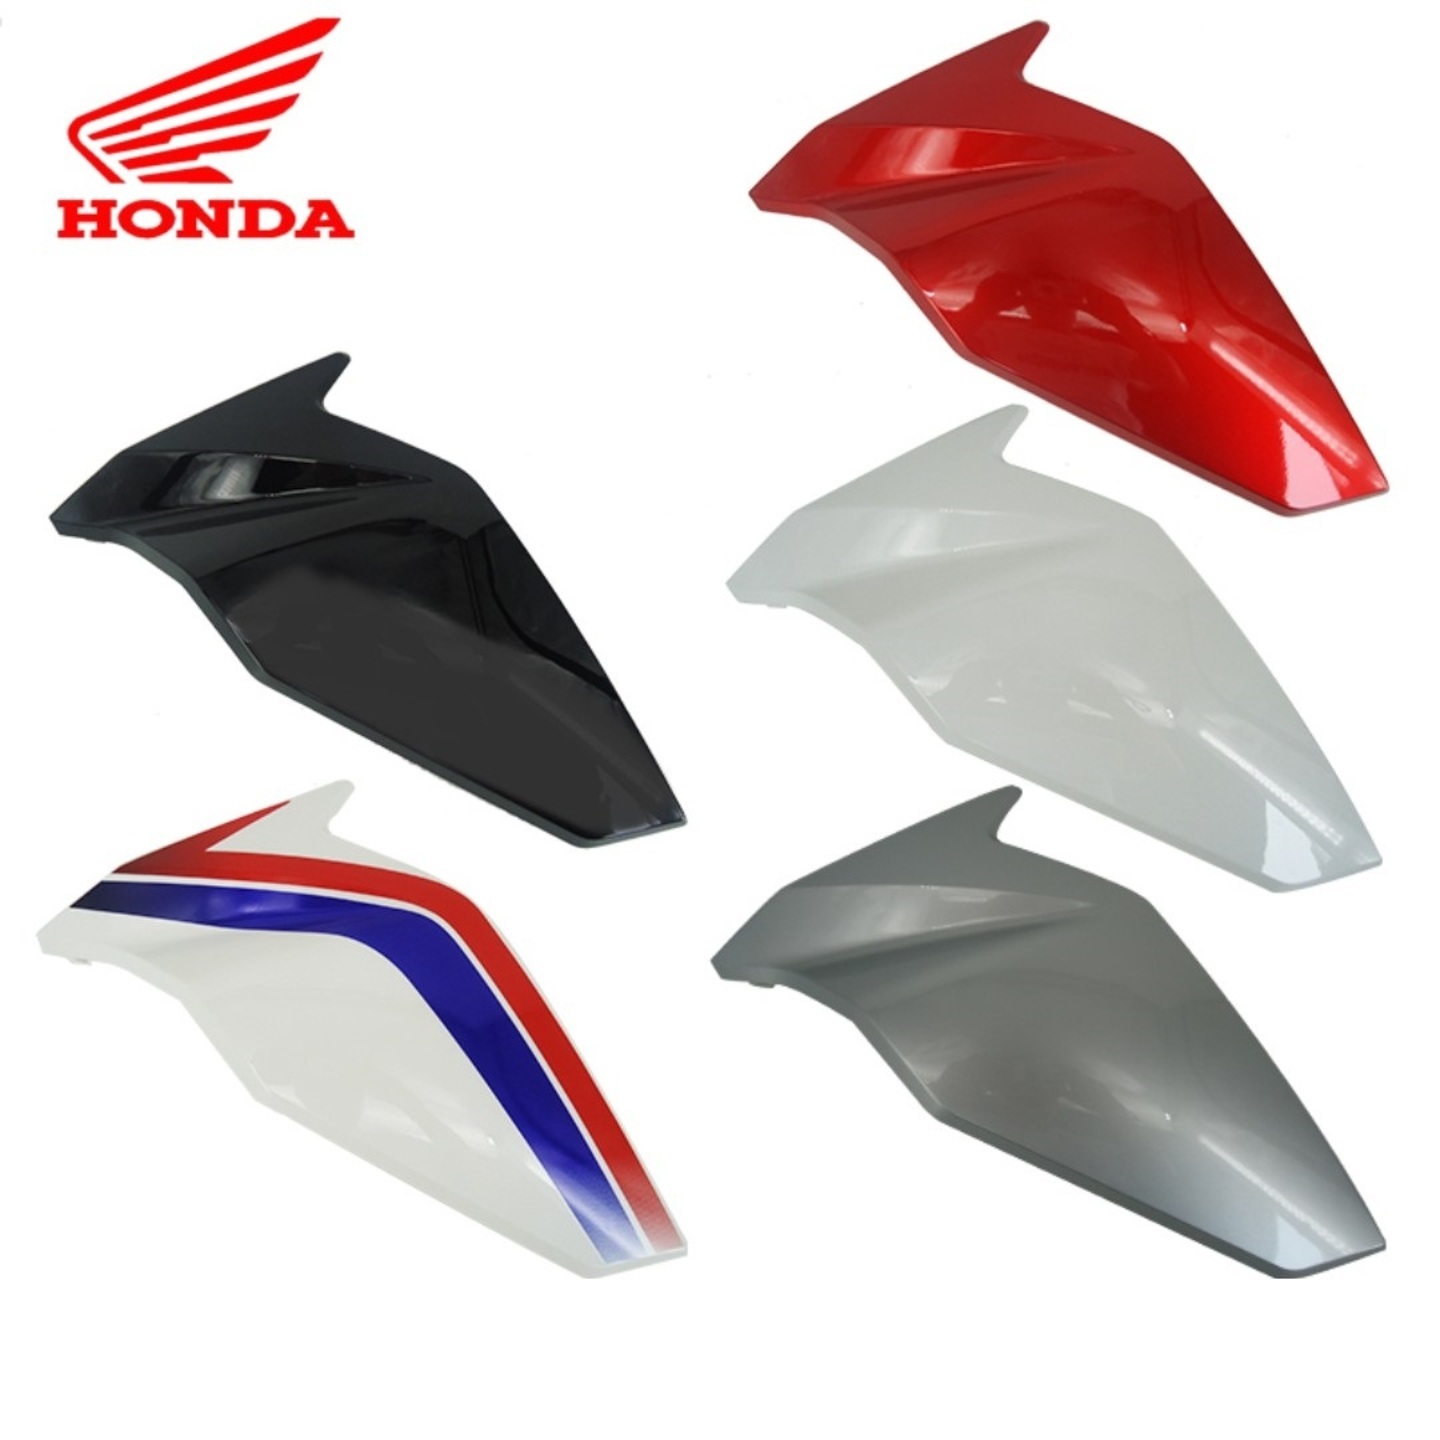 Honda CBF190X side left right fairings fairing covers cover coverset 